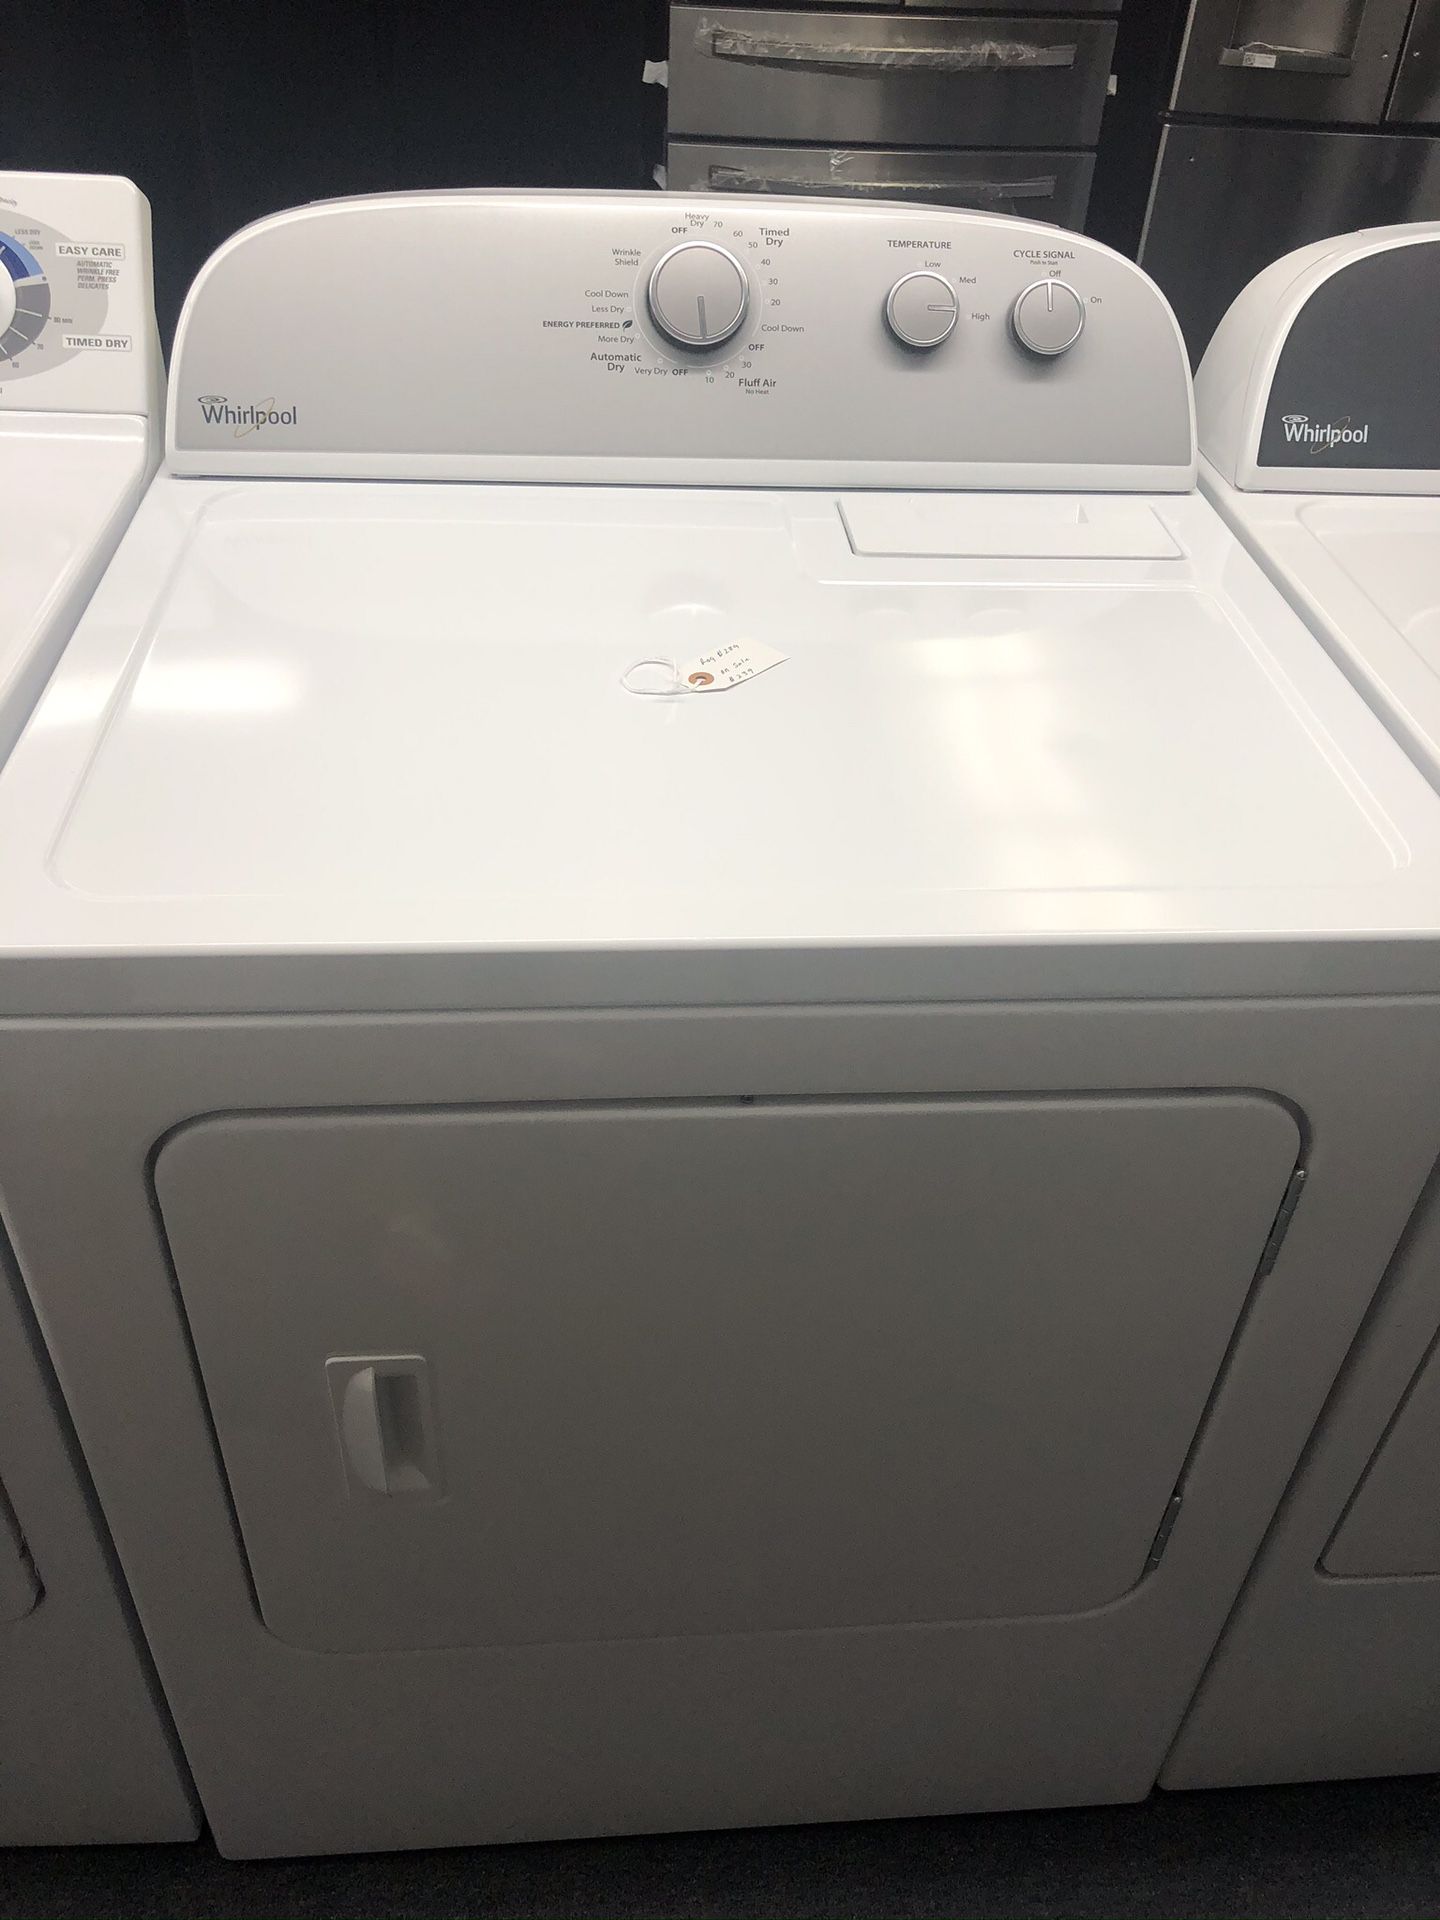 Used whirlpool dryer. 1 year warranty